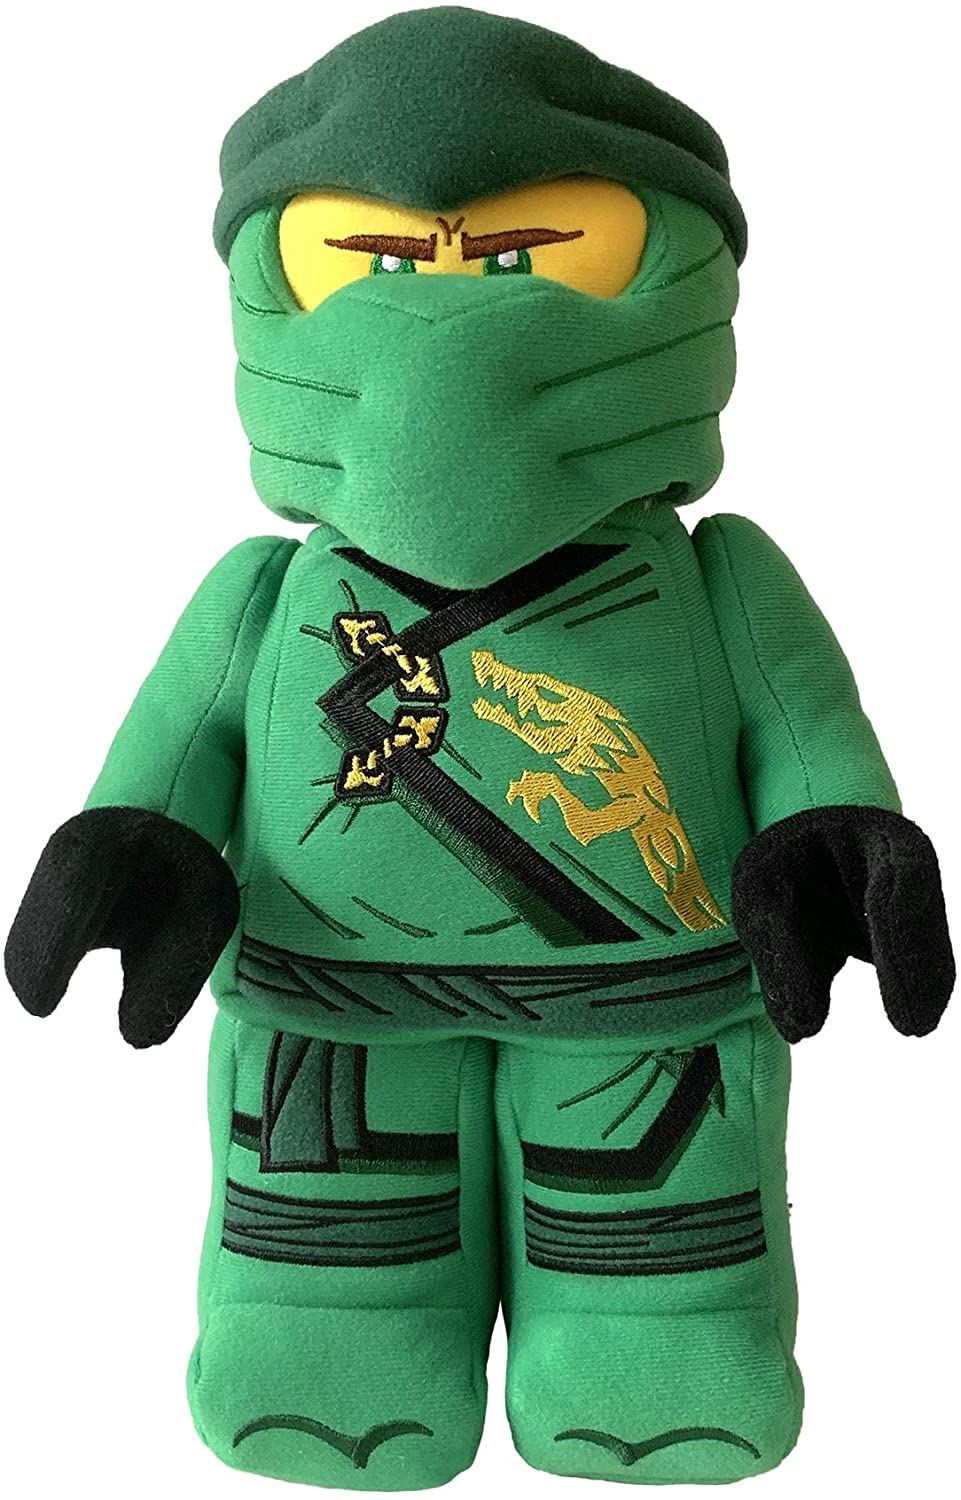 LEGO Ninjago Lloyd Ninja Warrior 13" Plush